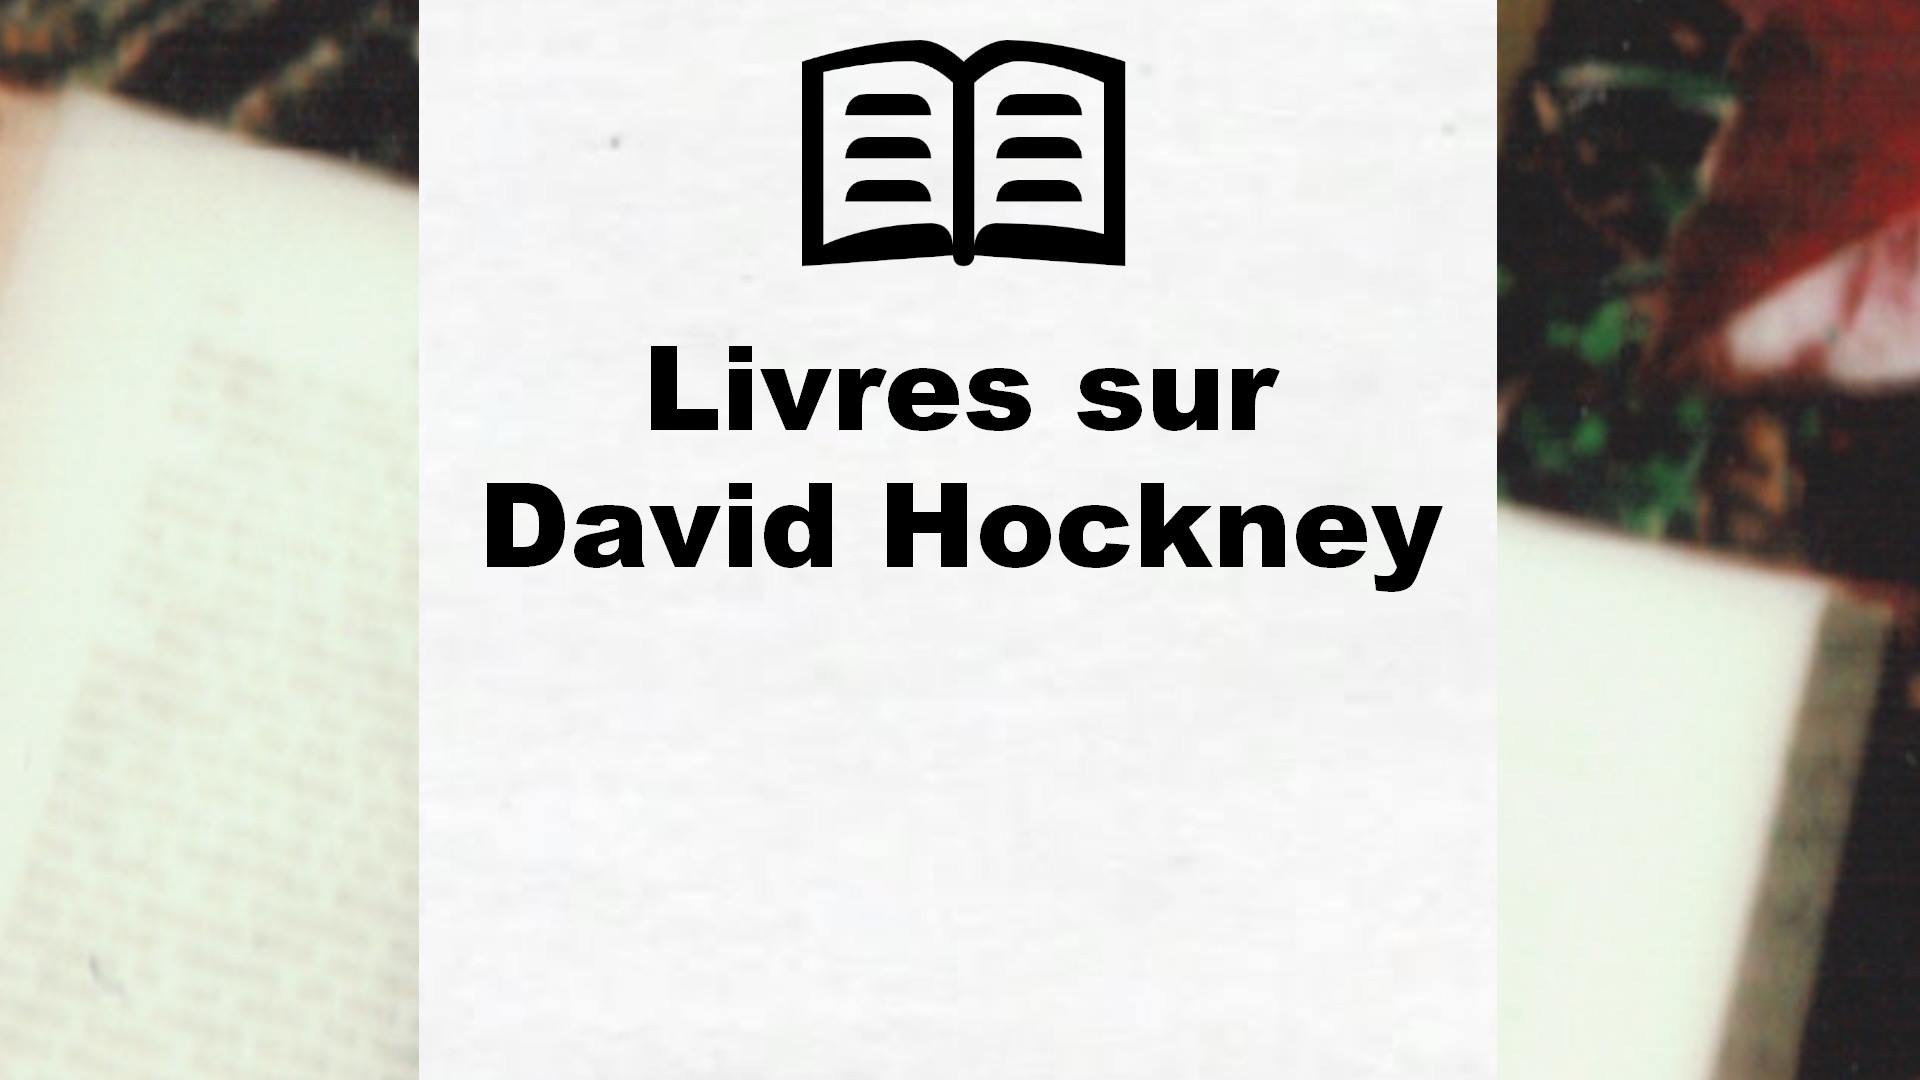 Livres sur David Hockney